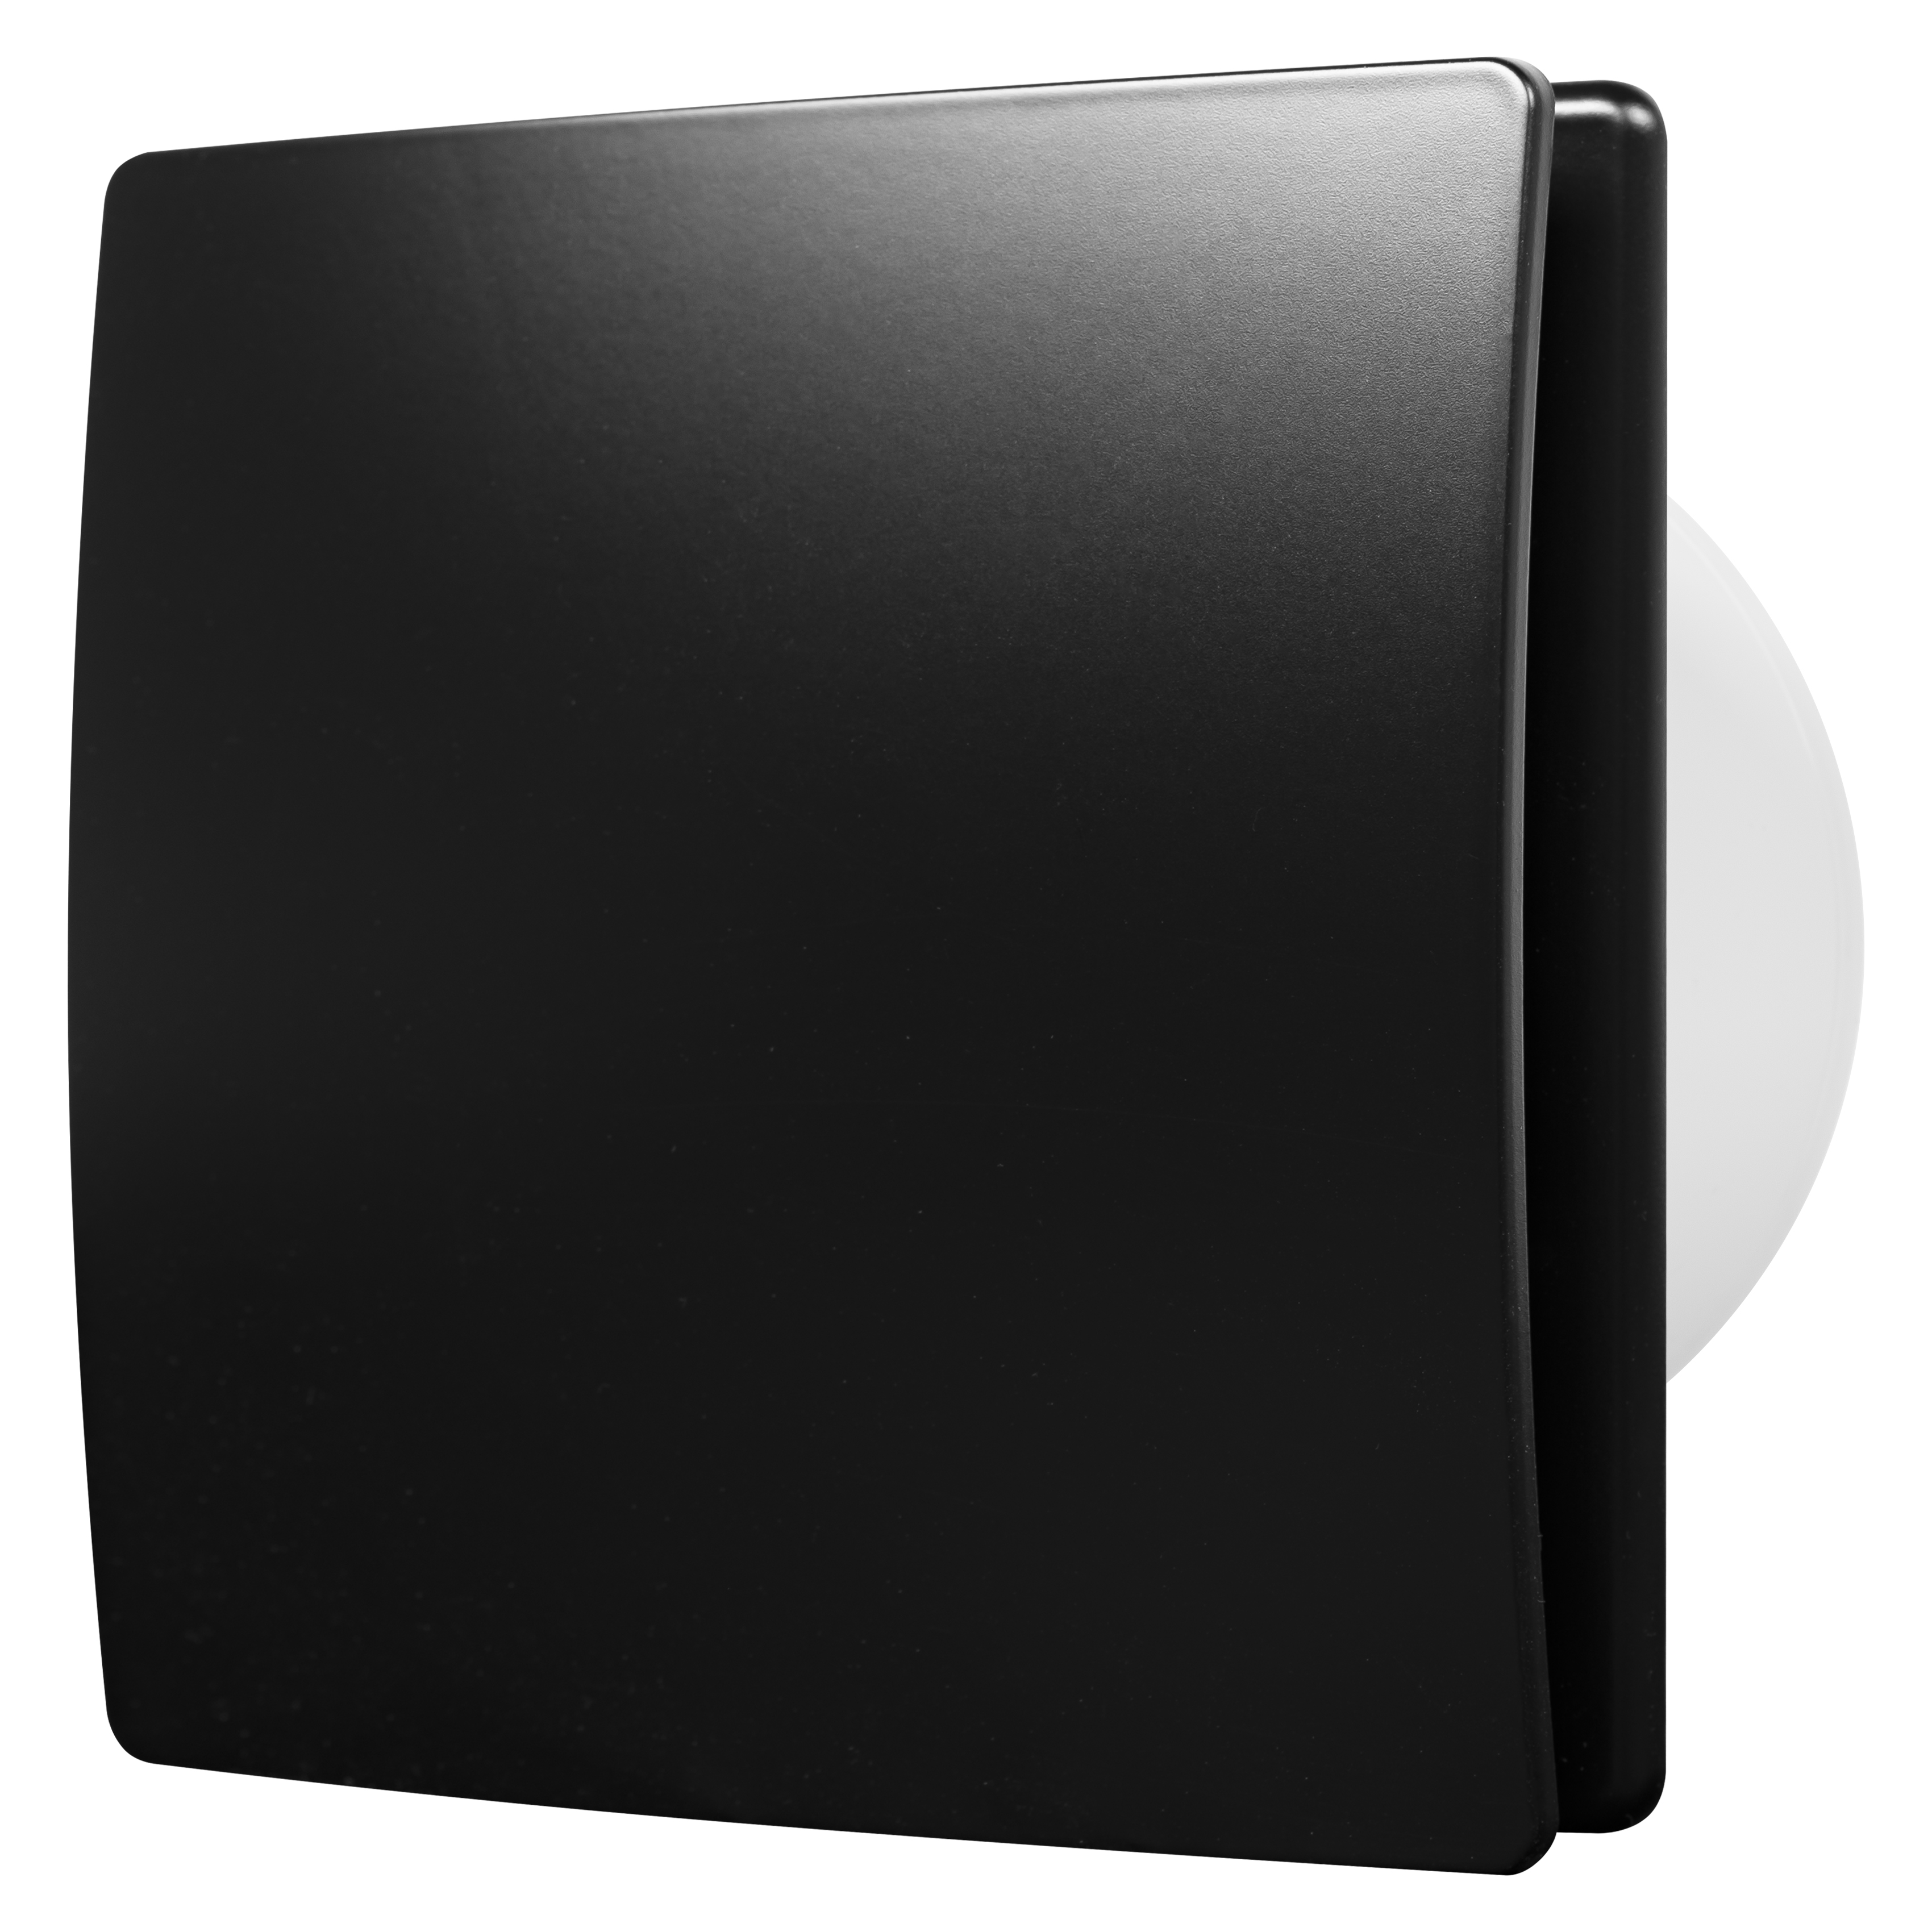 Вытяжной вентилятор Elicent Elegance 150 Black в интернет-магазине, главное фото